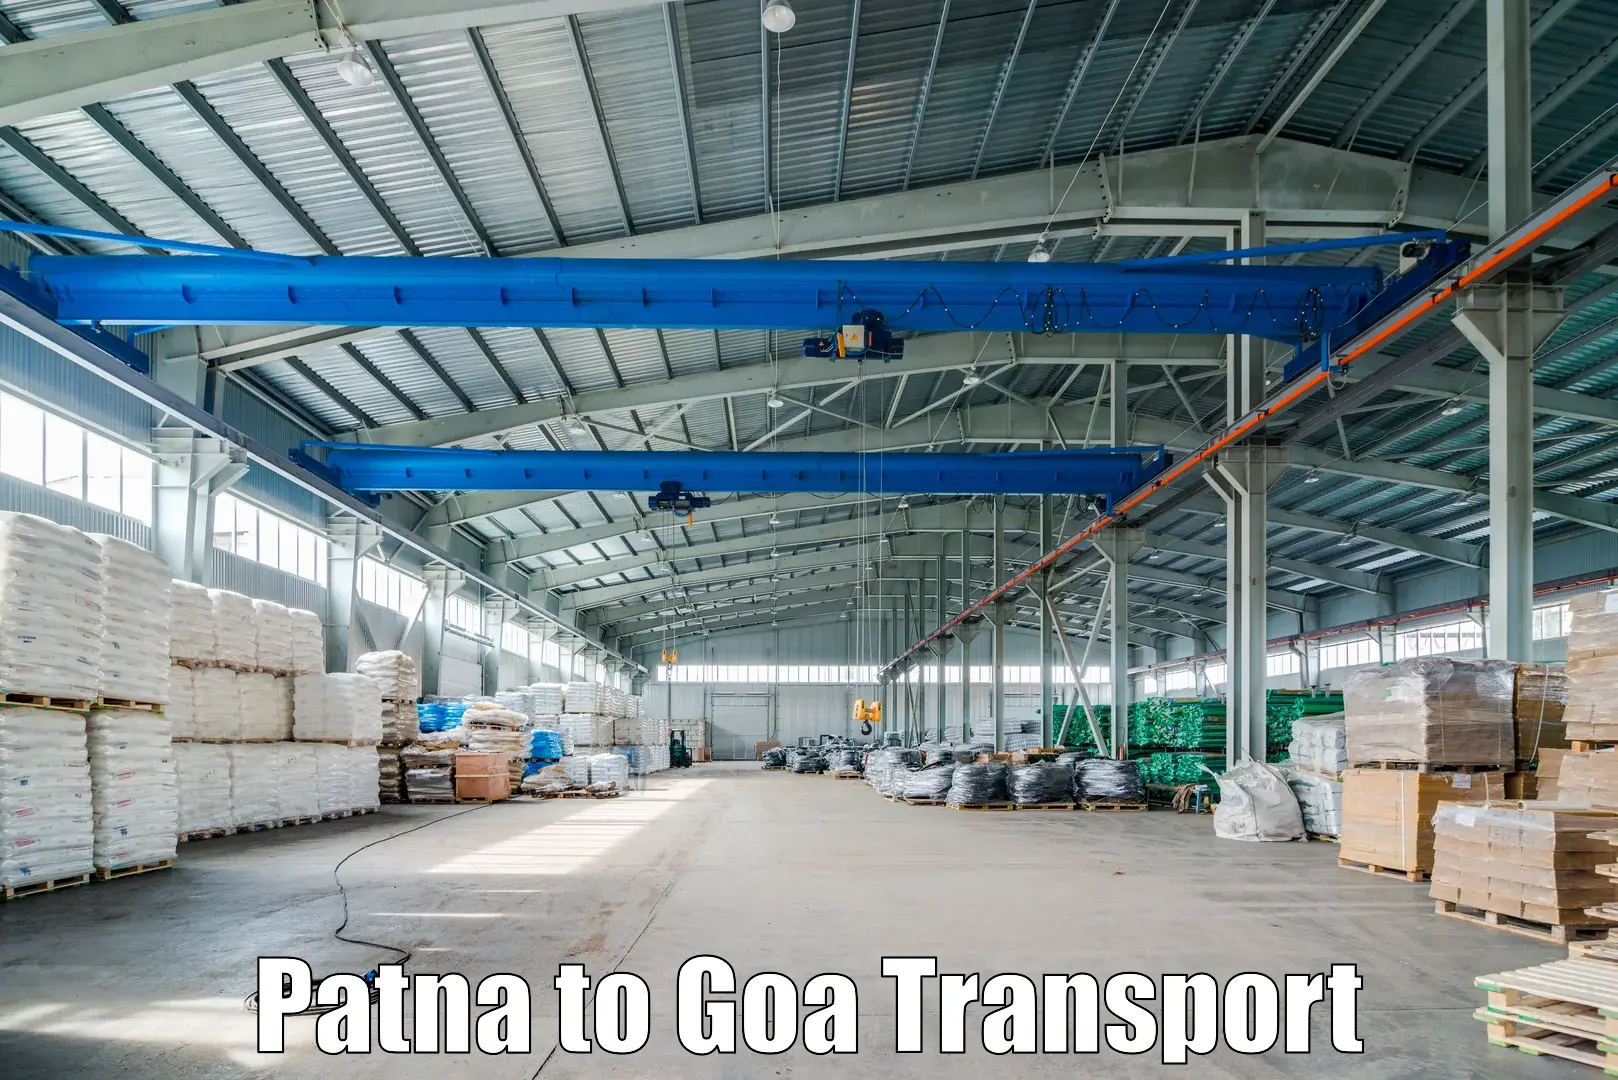 All India transport service Patna to Bardez